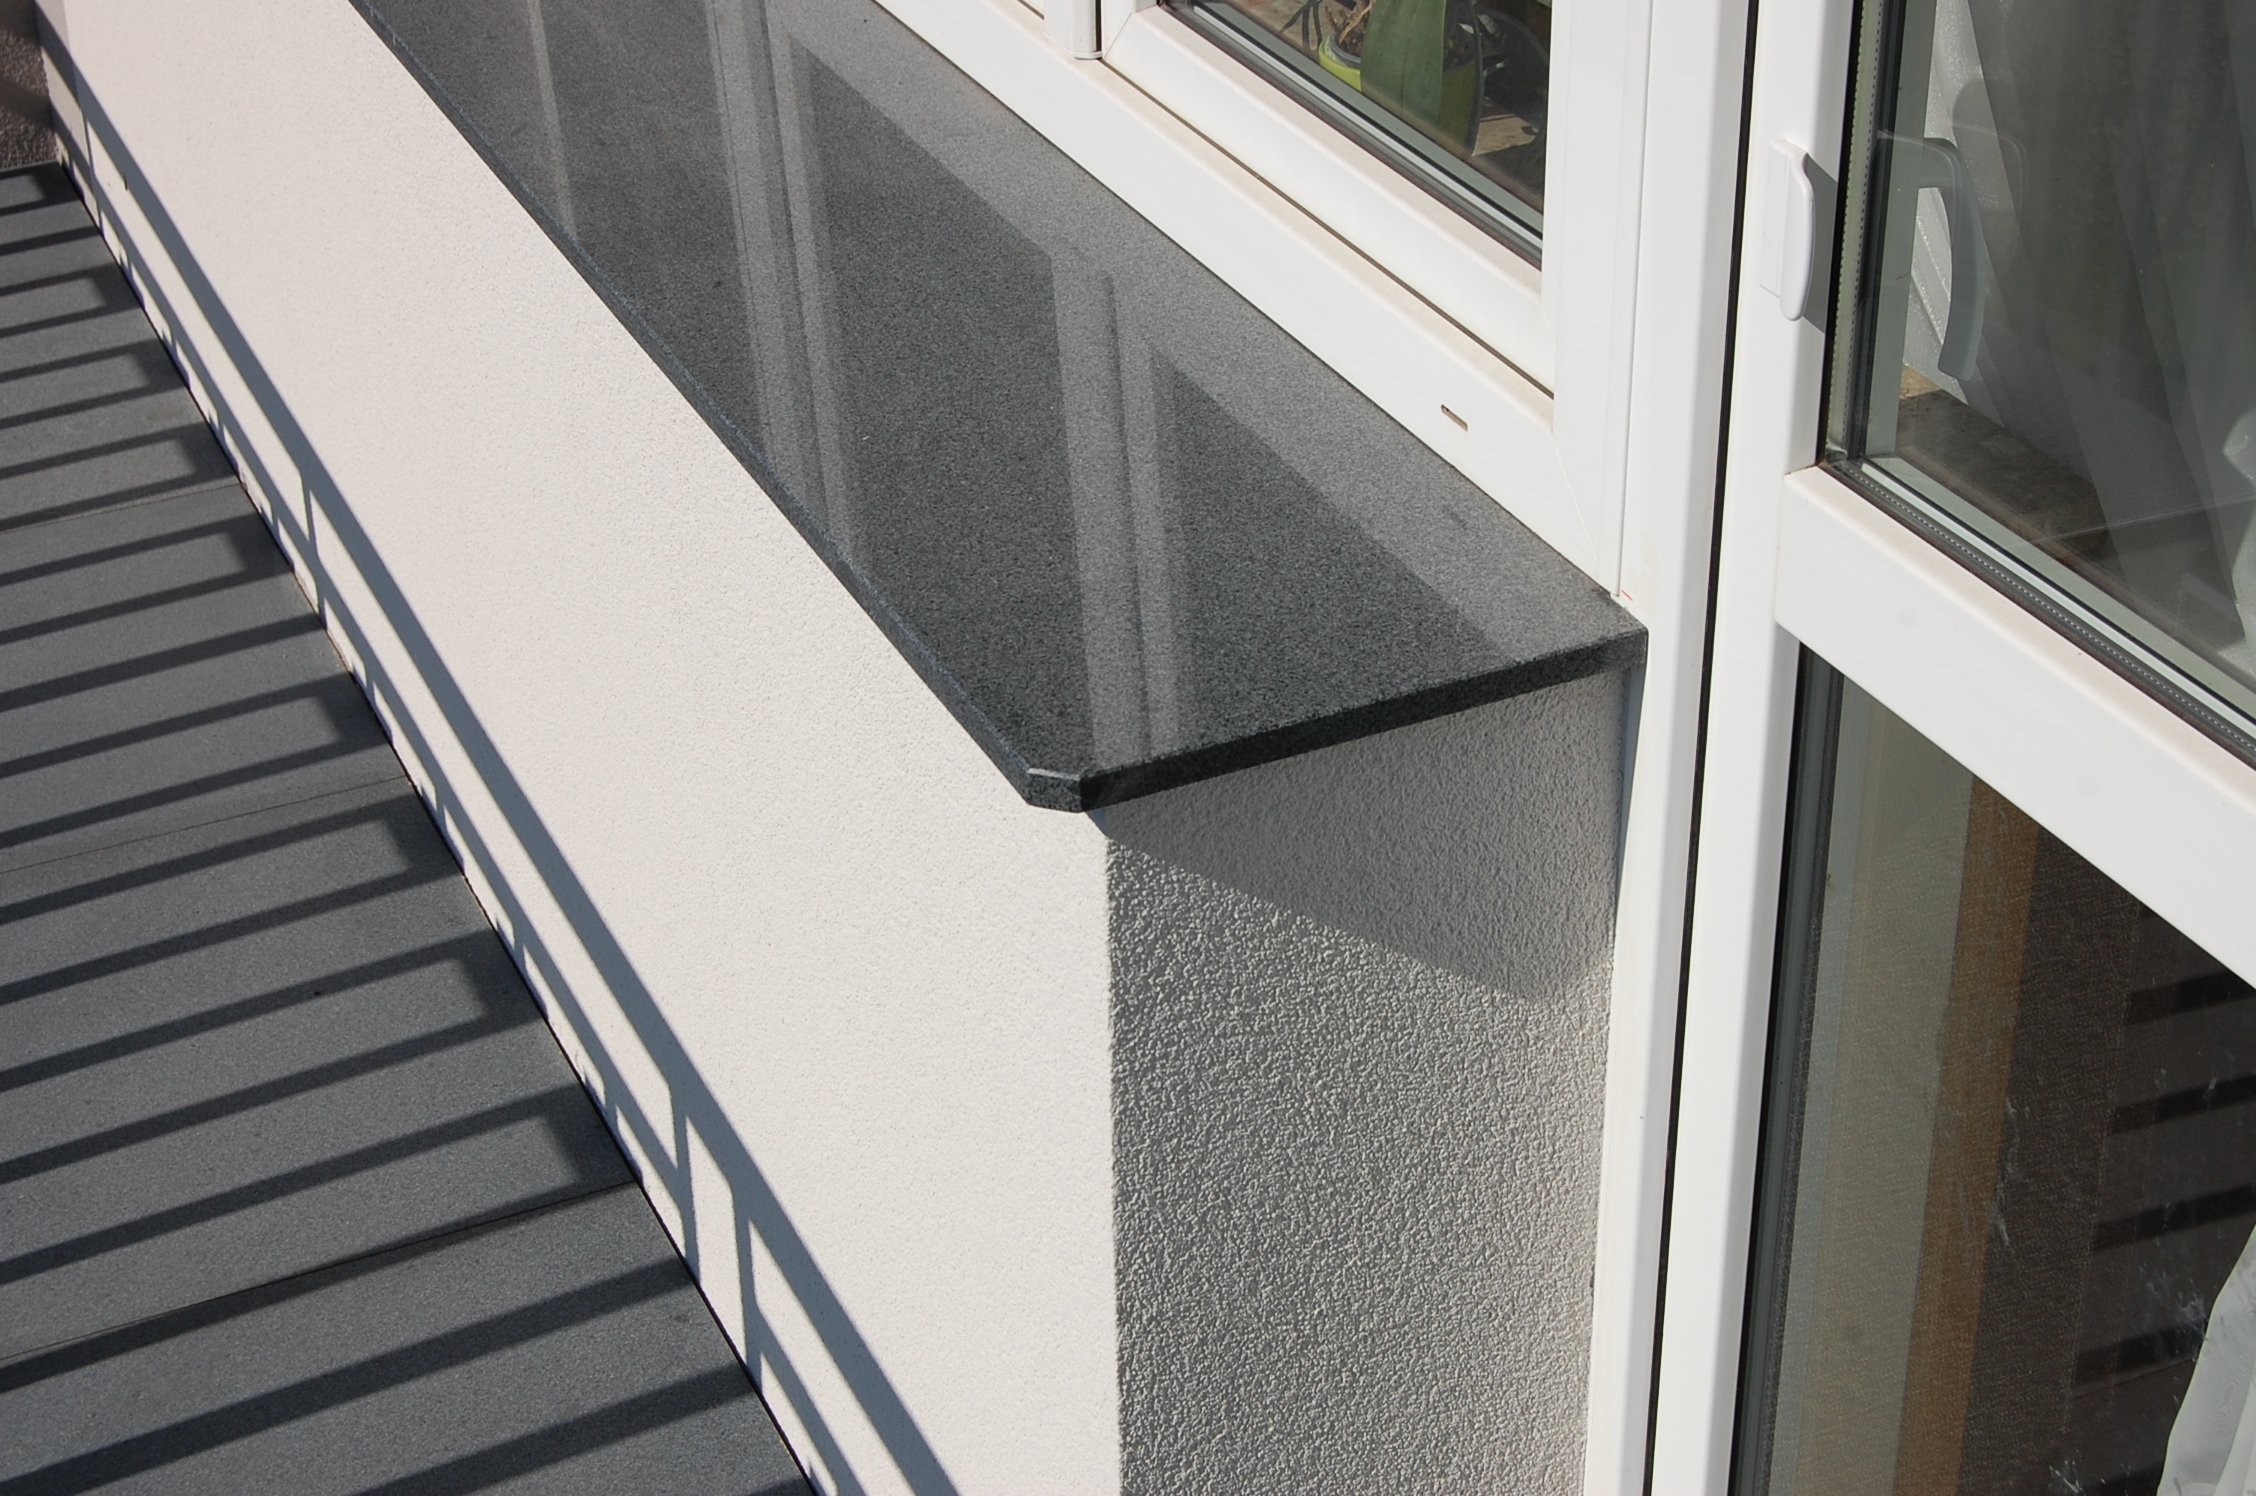 What distinguishes interior windowsills made of quartz conglomerate